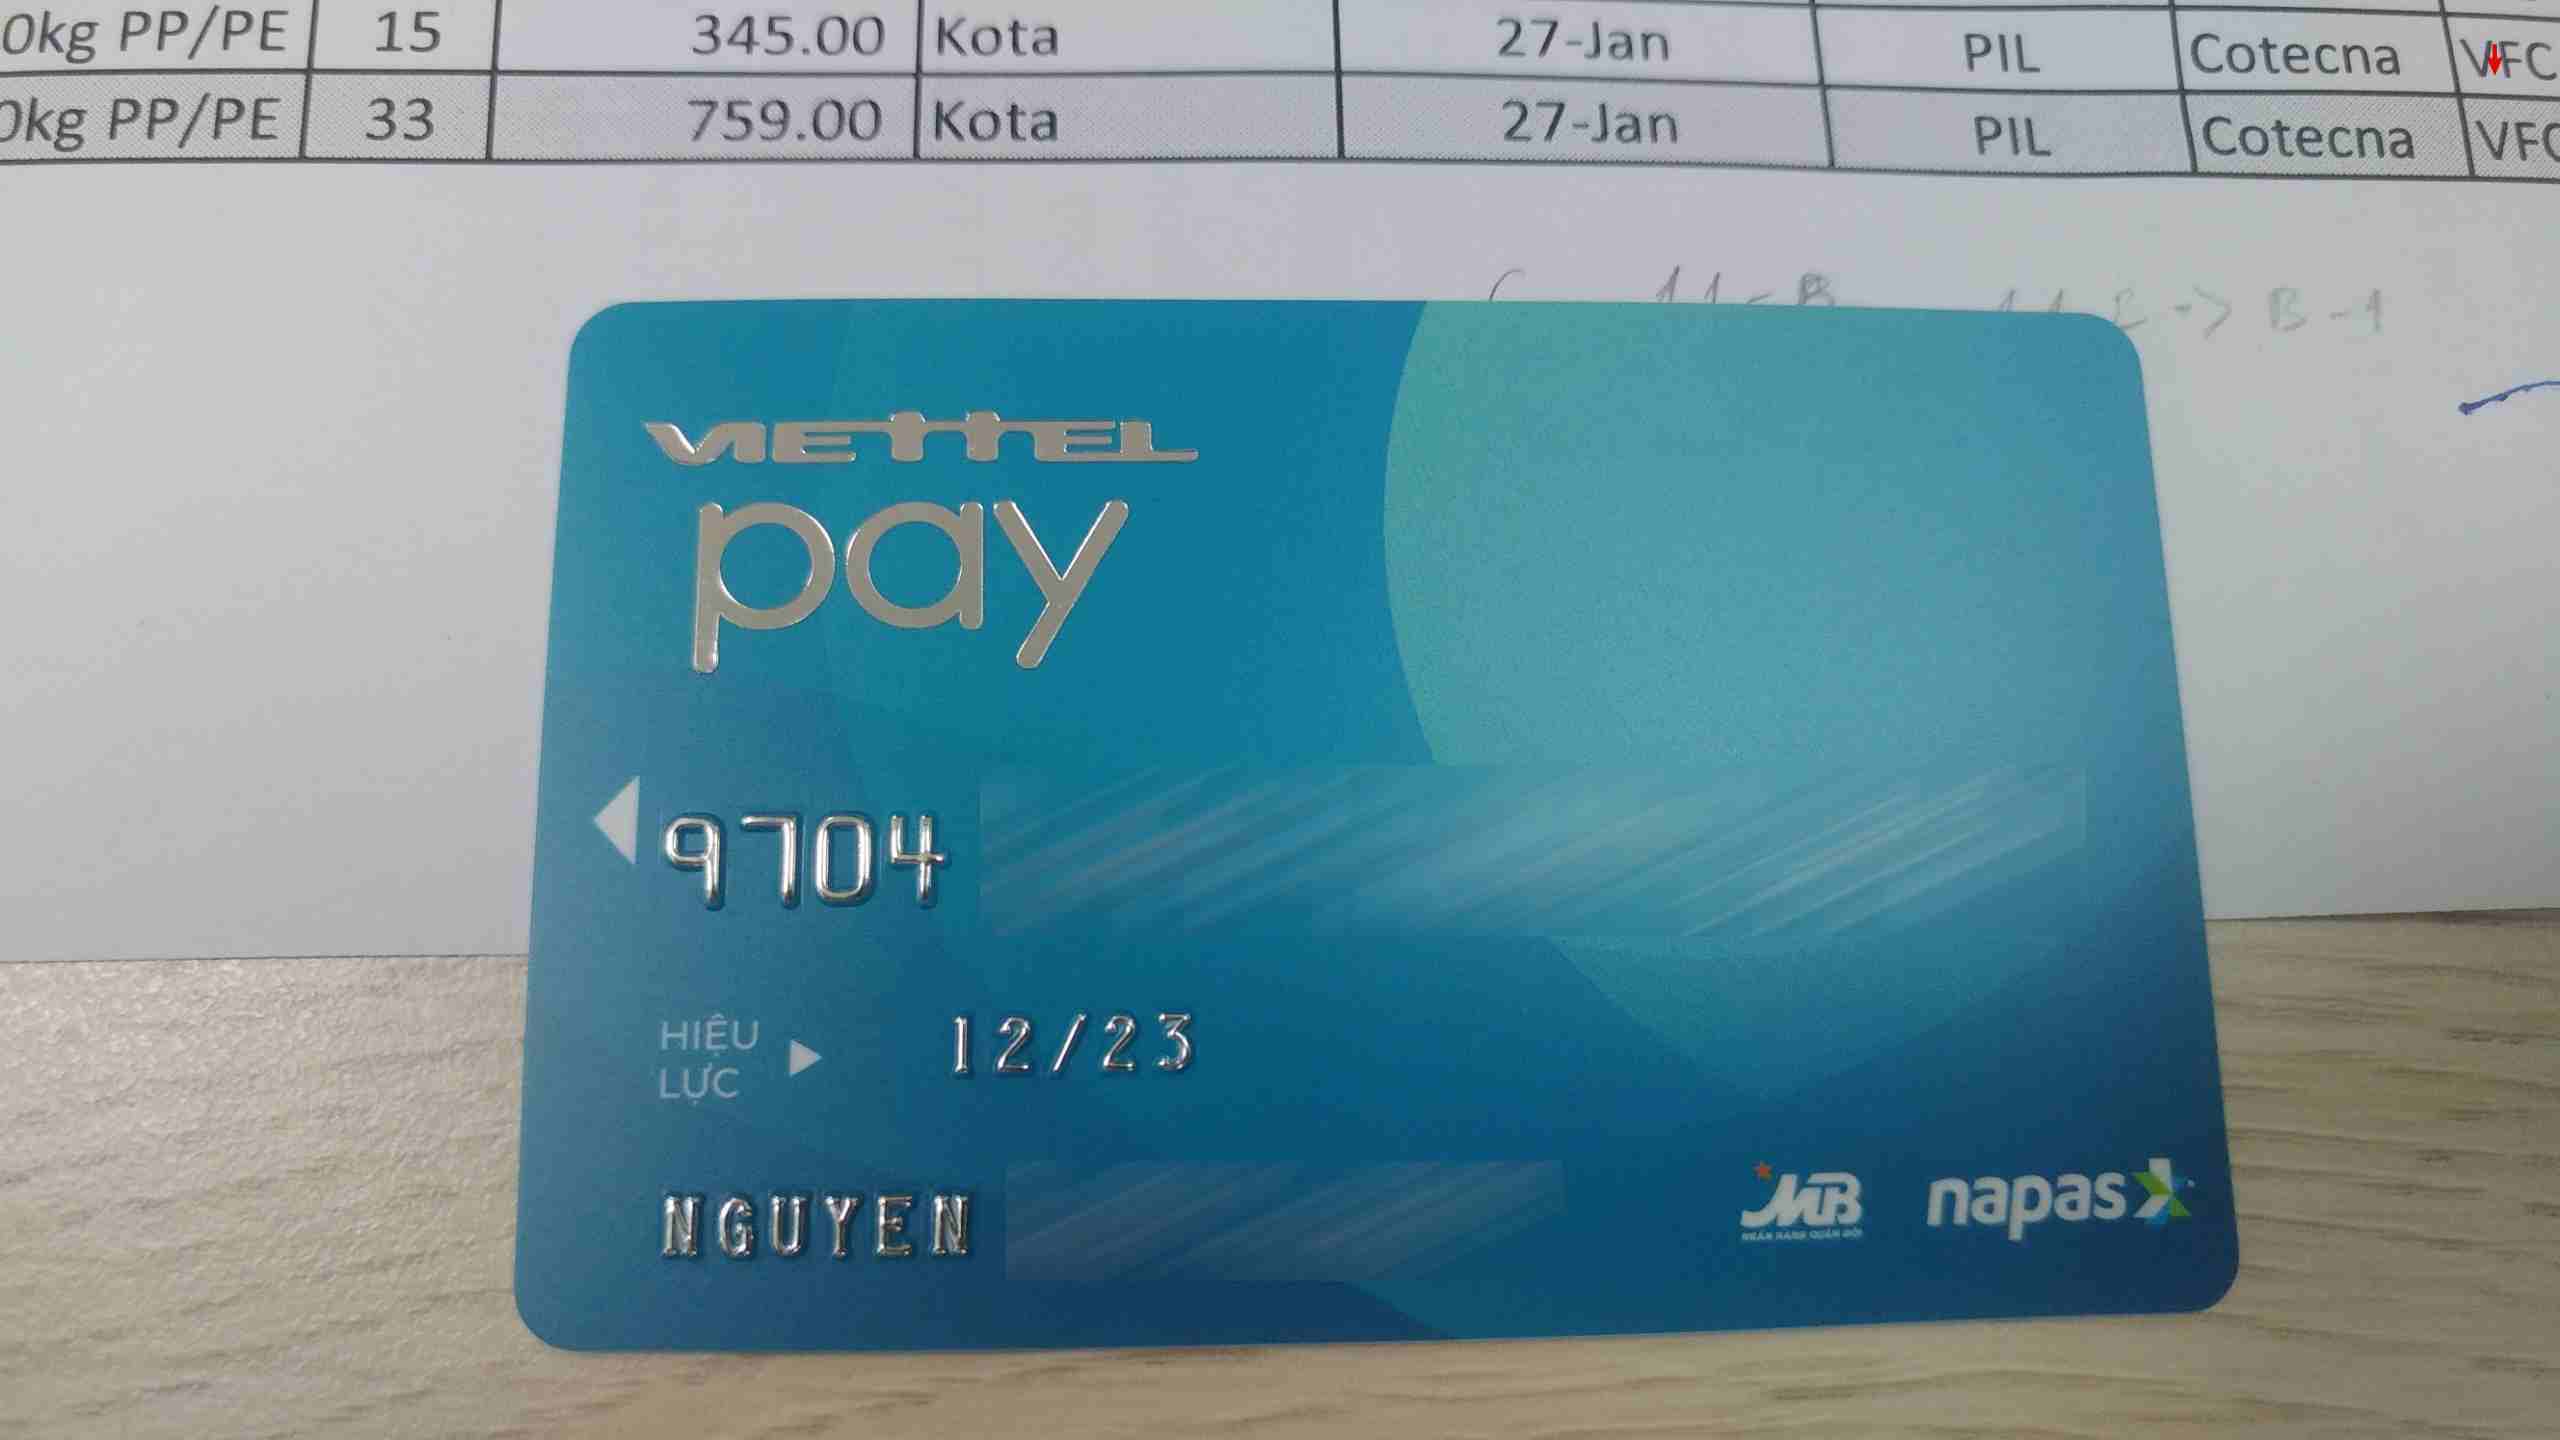 cách rút tiền Viettelpay tại ATM Agribank